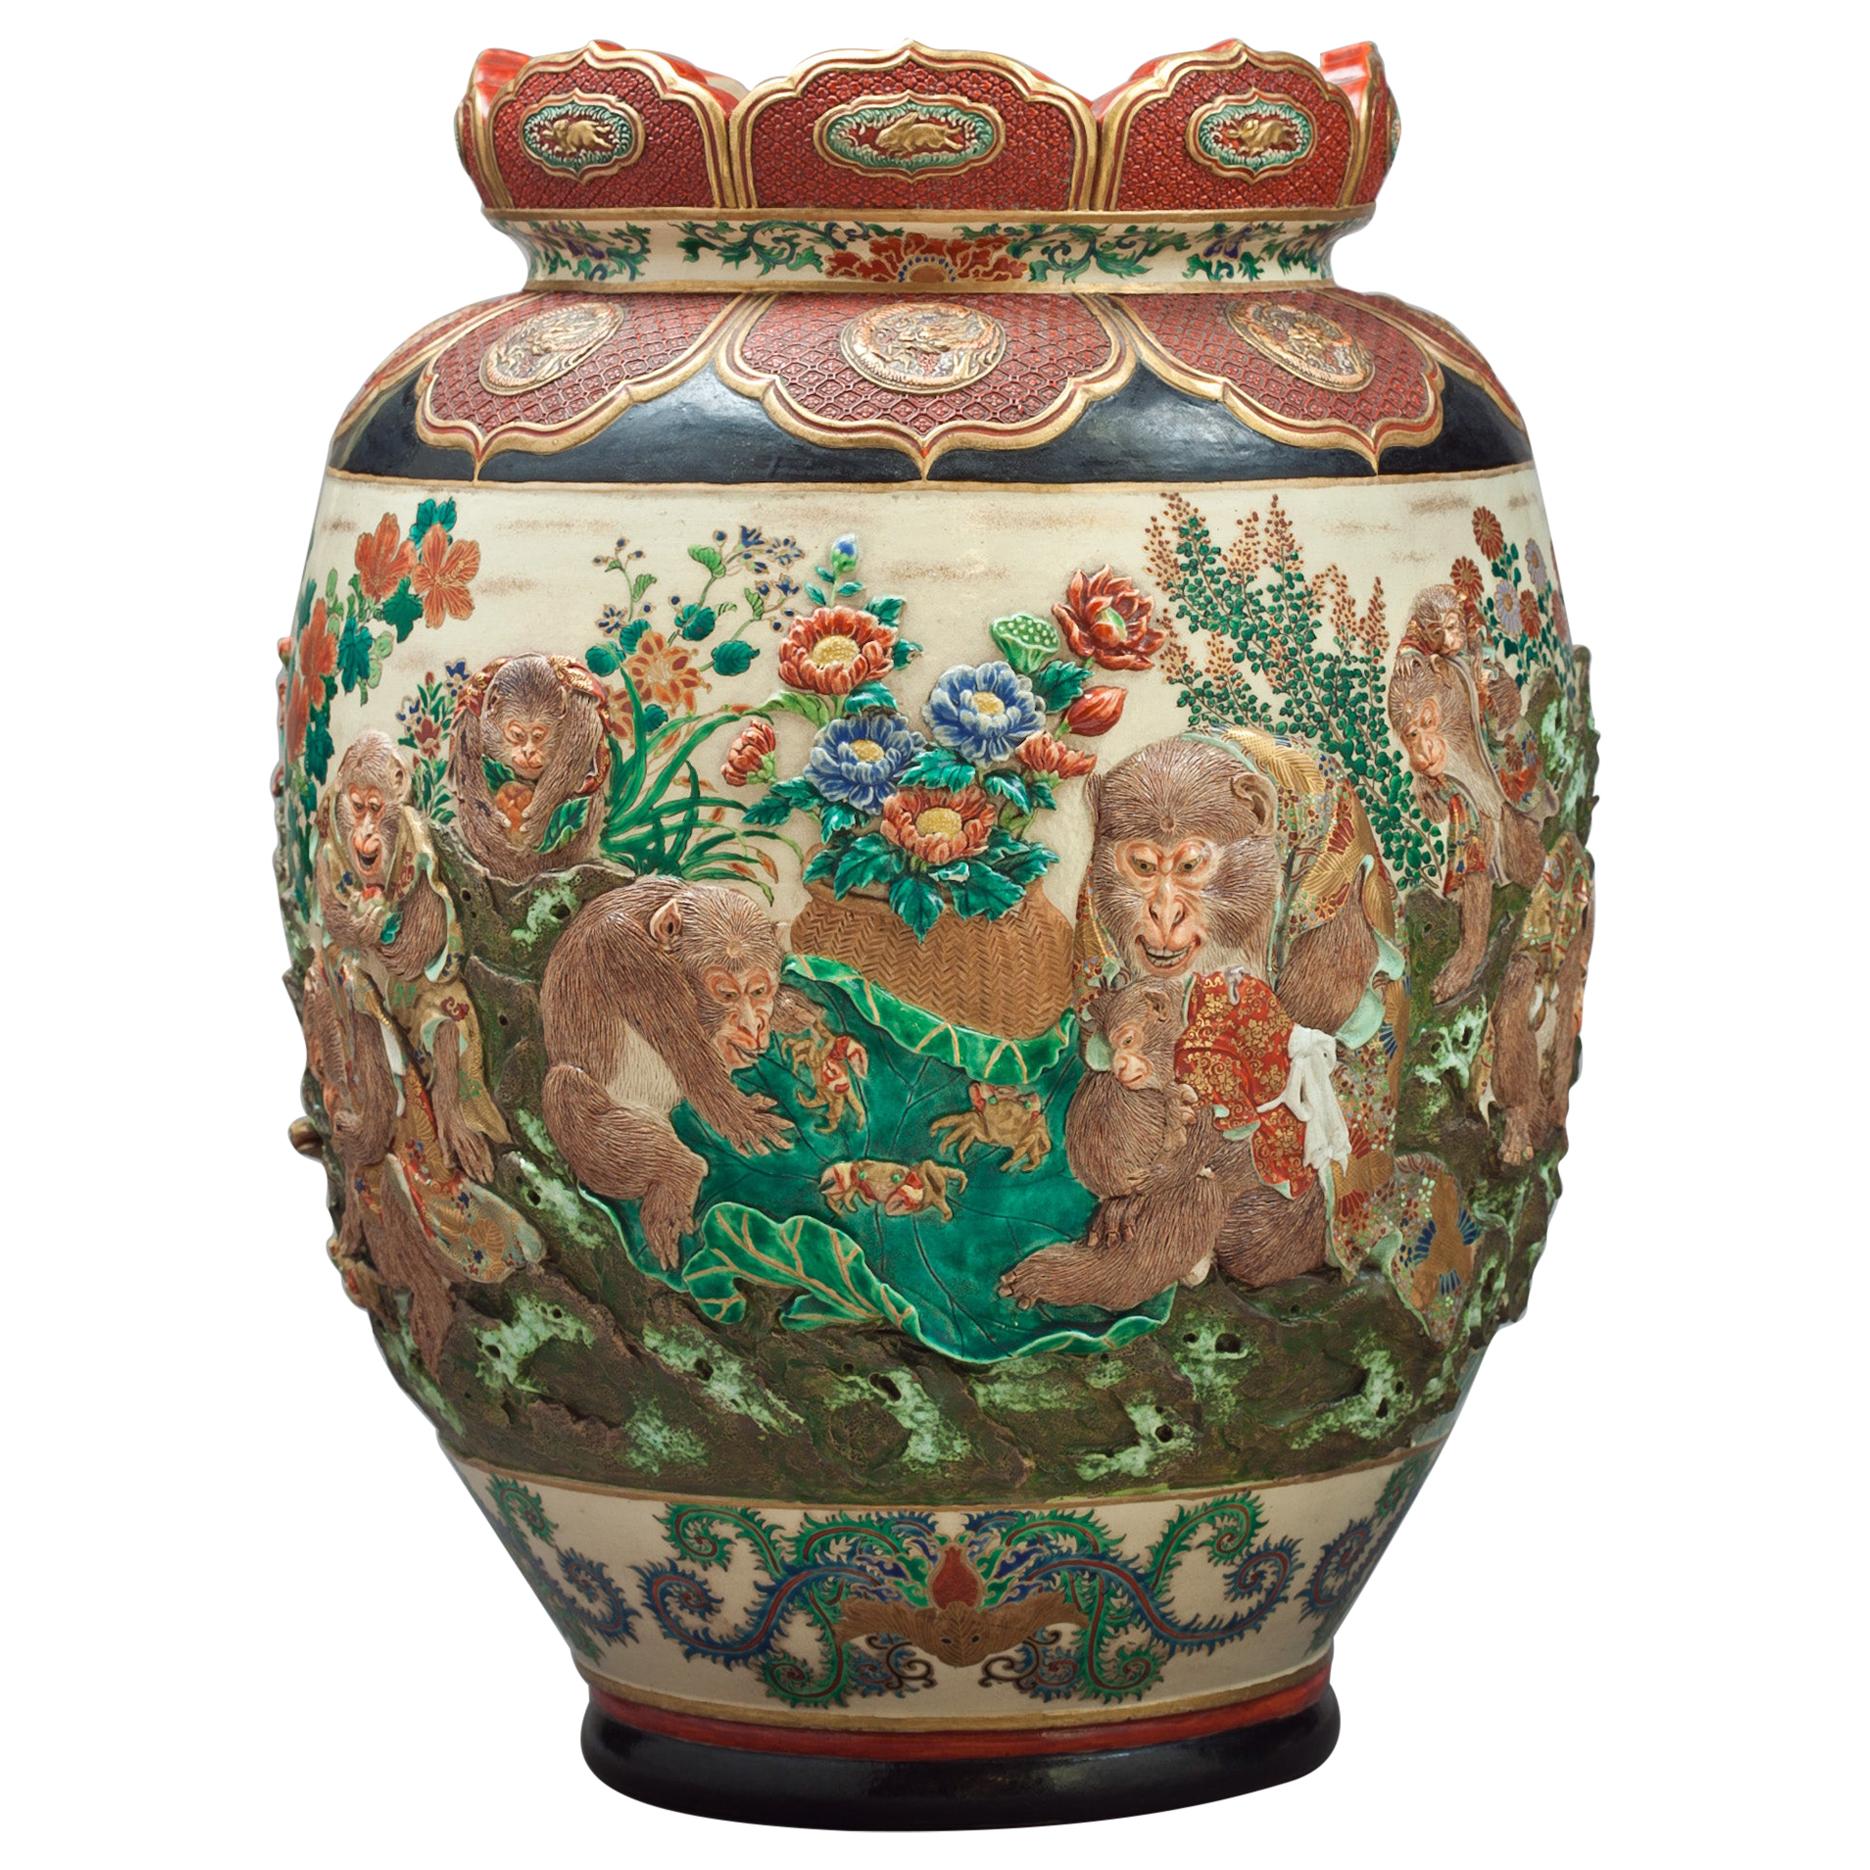 Japanese Satsuma Monkey Vase, circa 1880